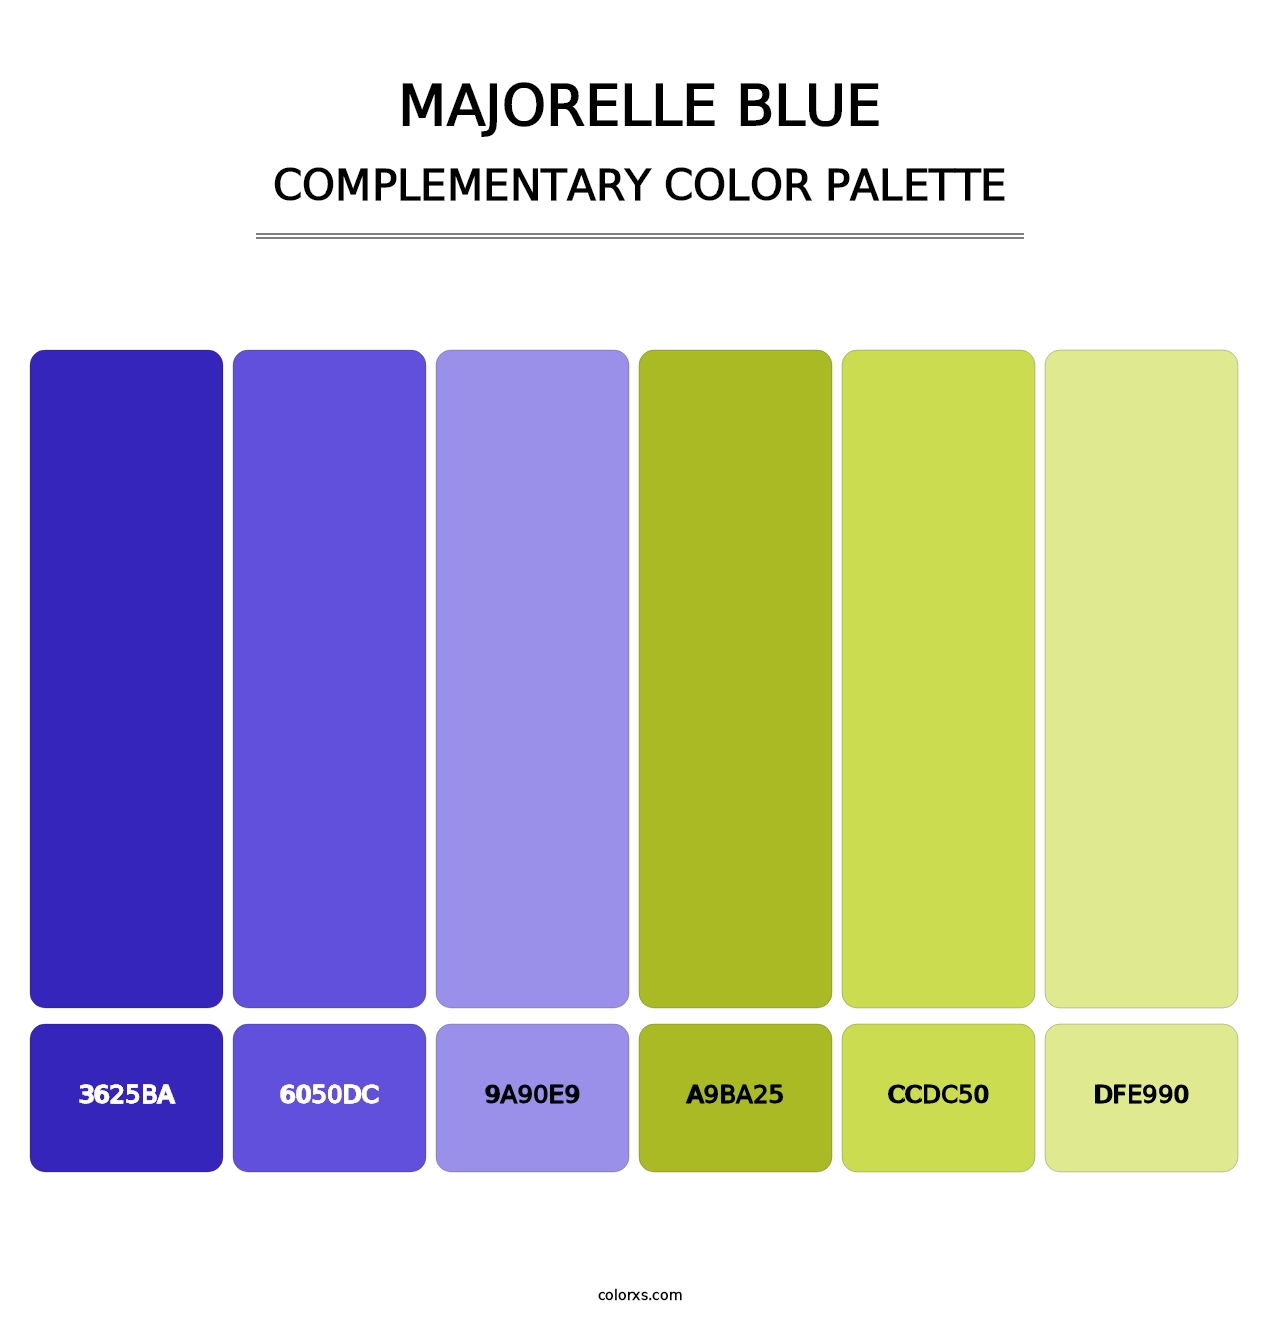 Majorelle Blue - Complementary Color Palette